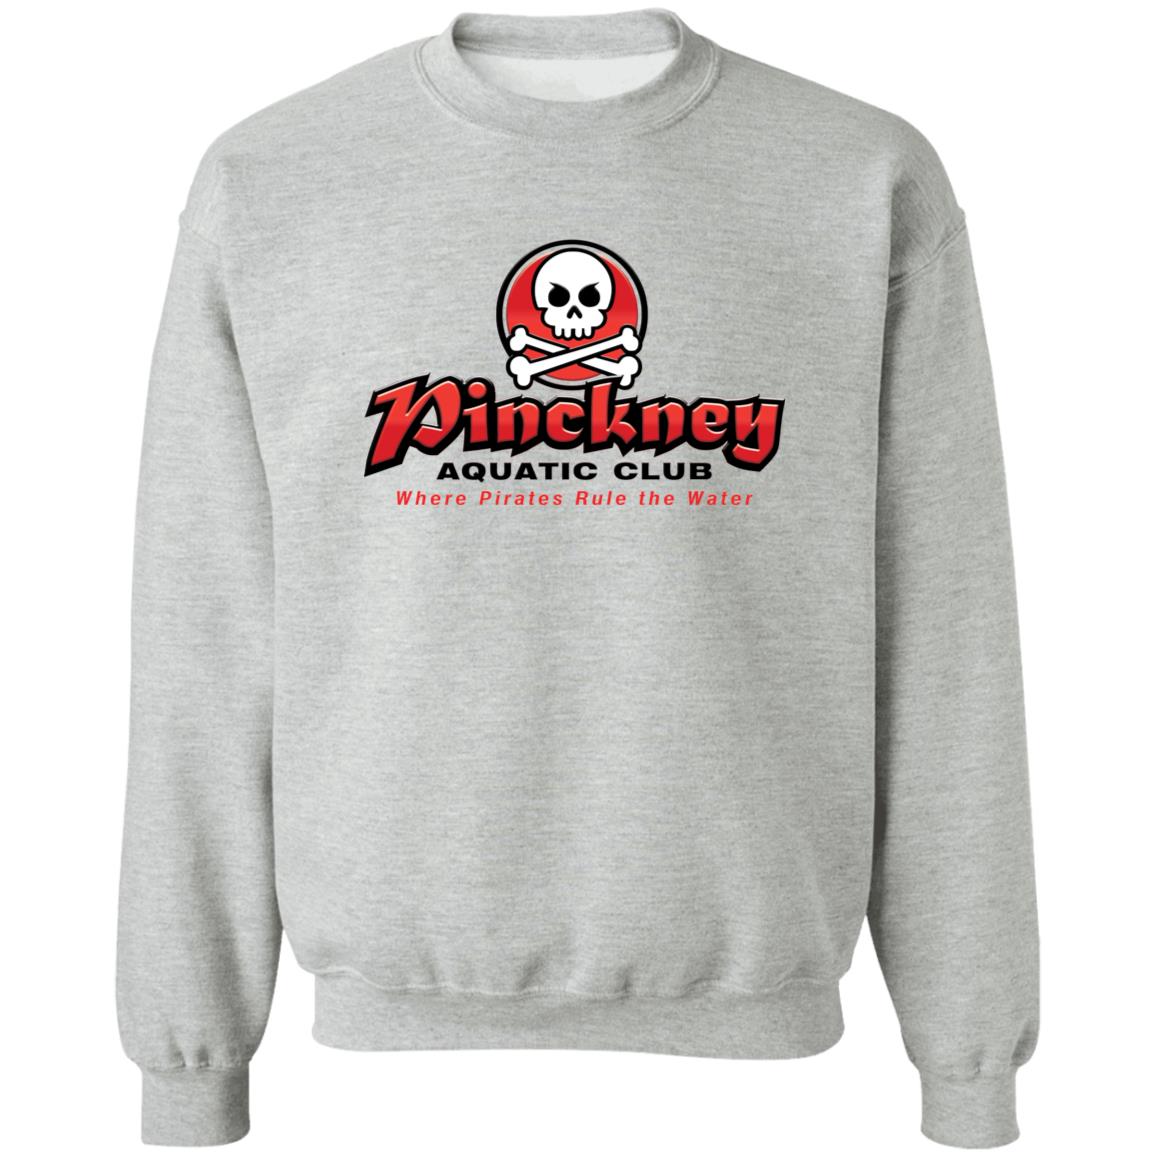 Pinckney Aquatic Club - B, W & R, G180 Crewneck Pullover Sweatshirt